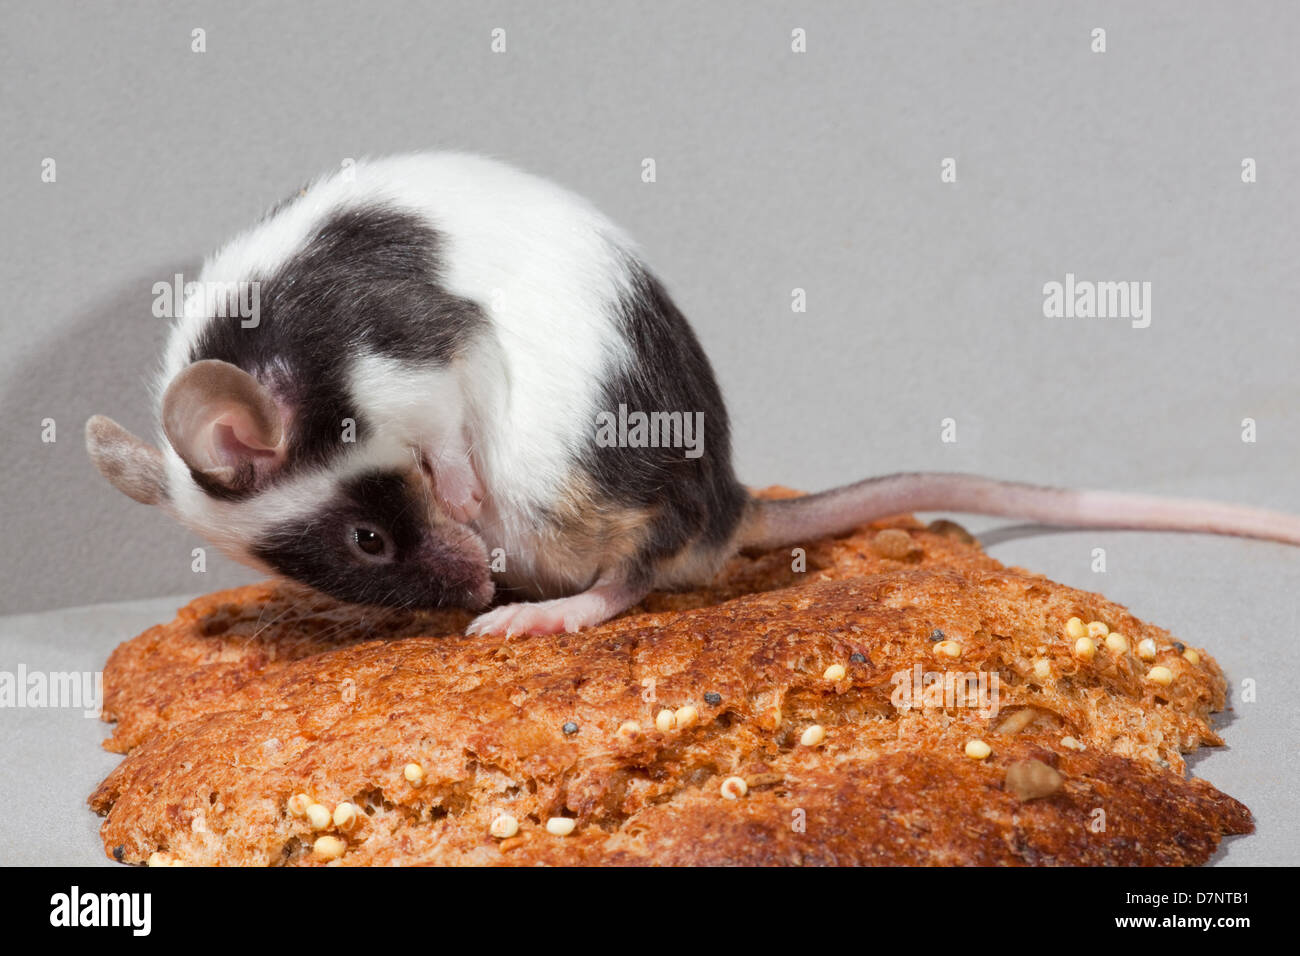 Animal fantaisie Souris (Mus musculus). Piebald, noir et blanc, de toilettage. Assis sur une croûte de pain. Banque D'Images